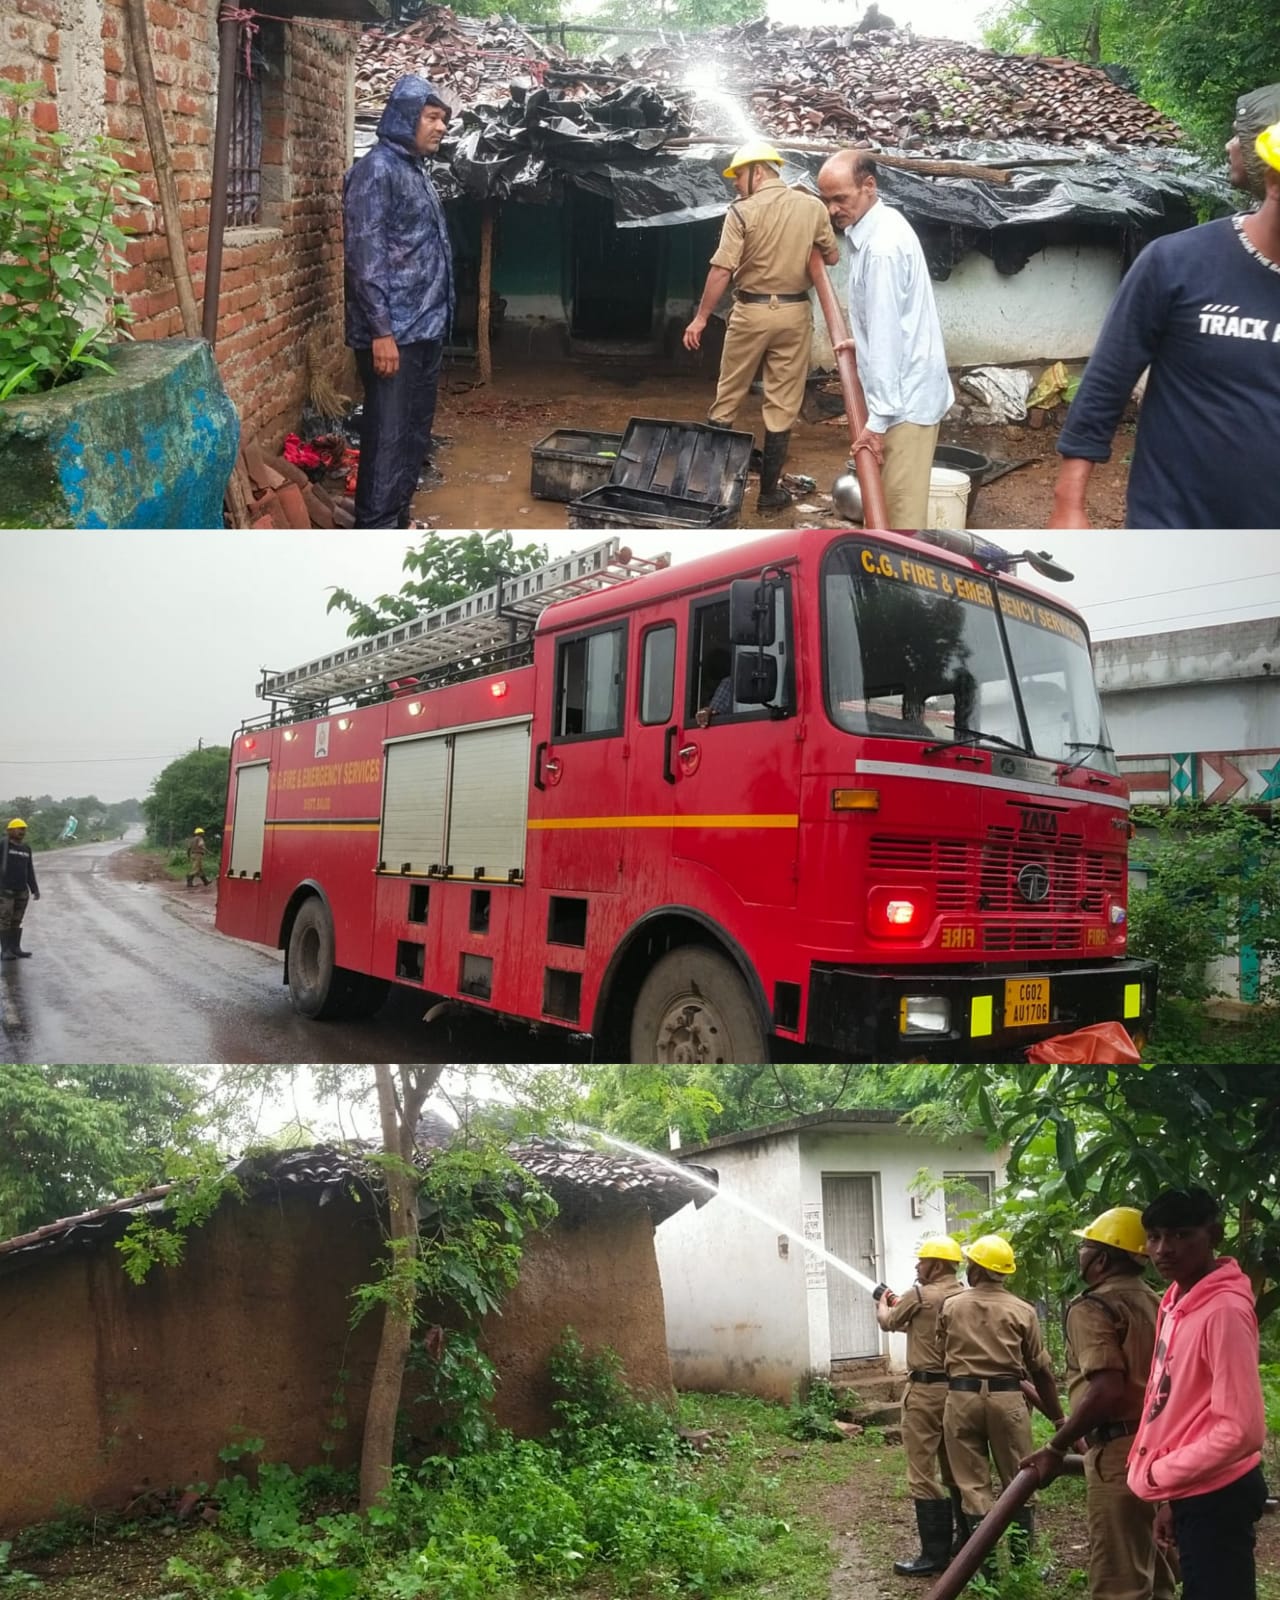 कलकसा के कंगलू राम के घर लगी आग, सब कुछ जलकर हुआ खाक , पड़ोसी पर लगाया घटना को अंजाम देने का आरोप